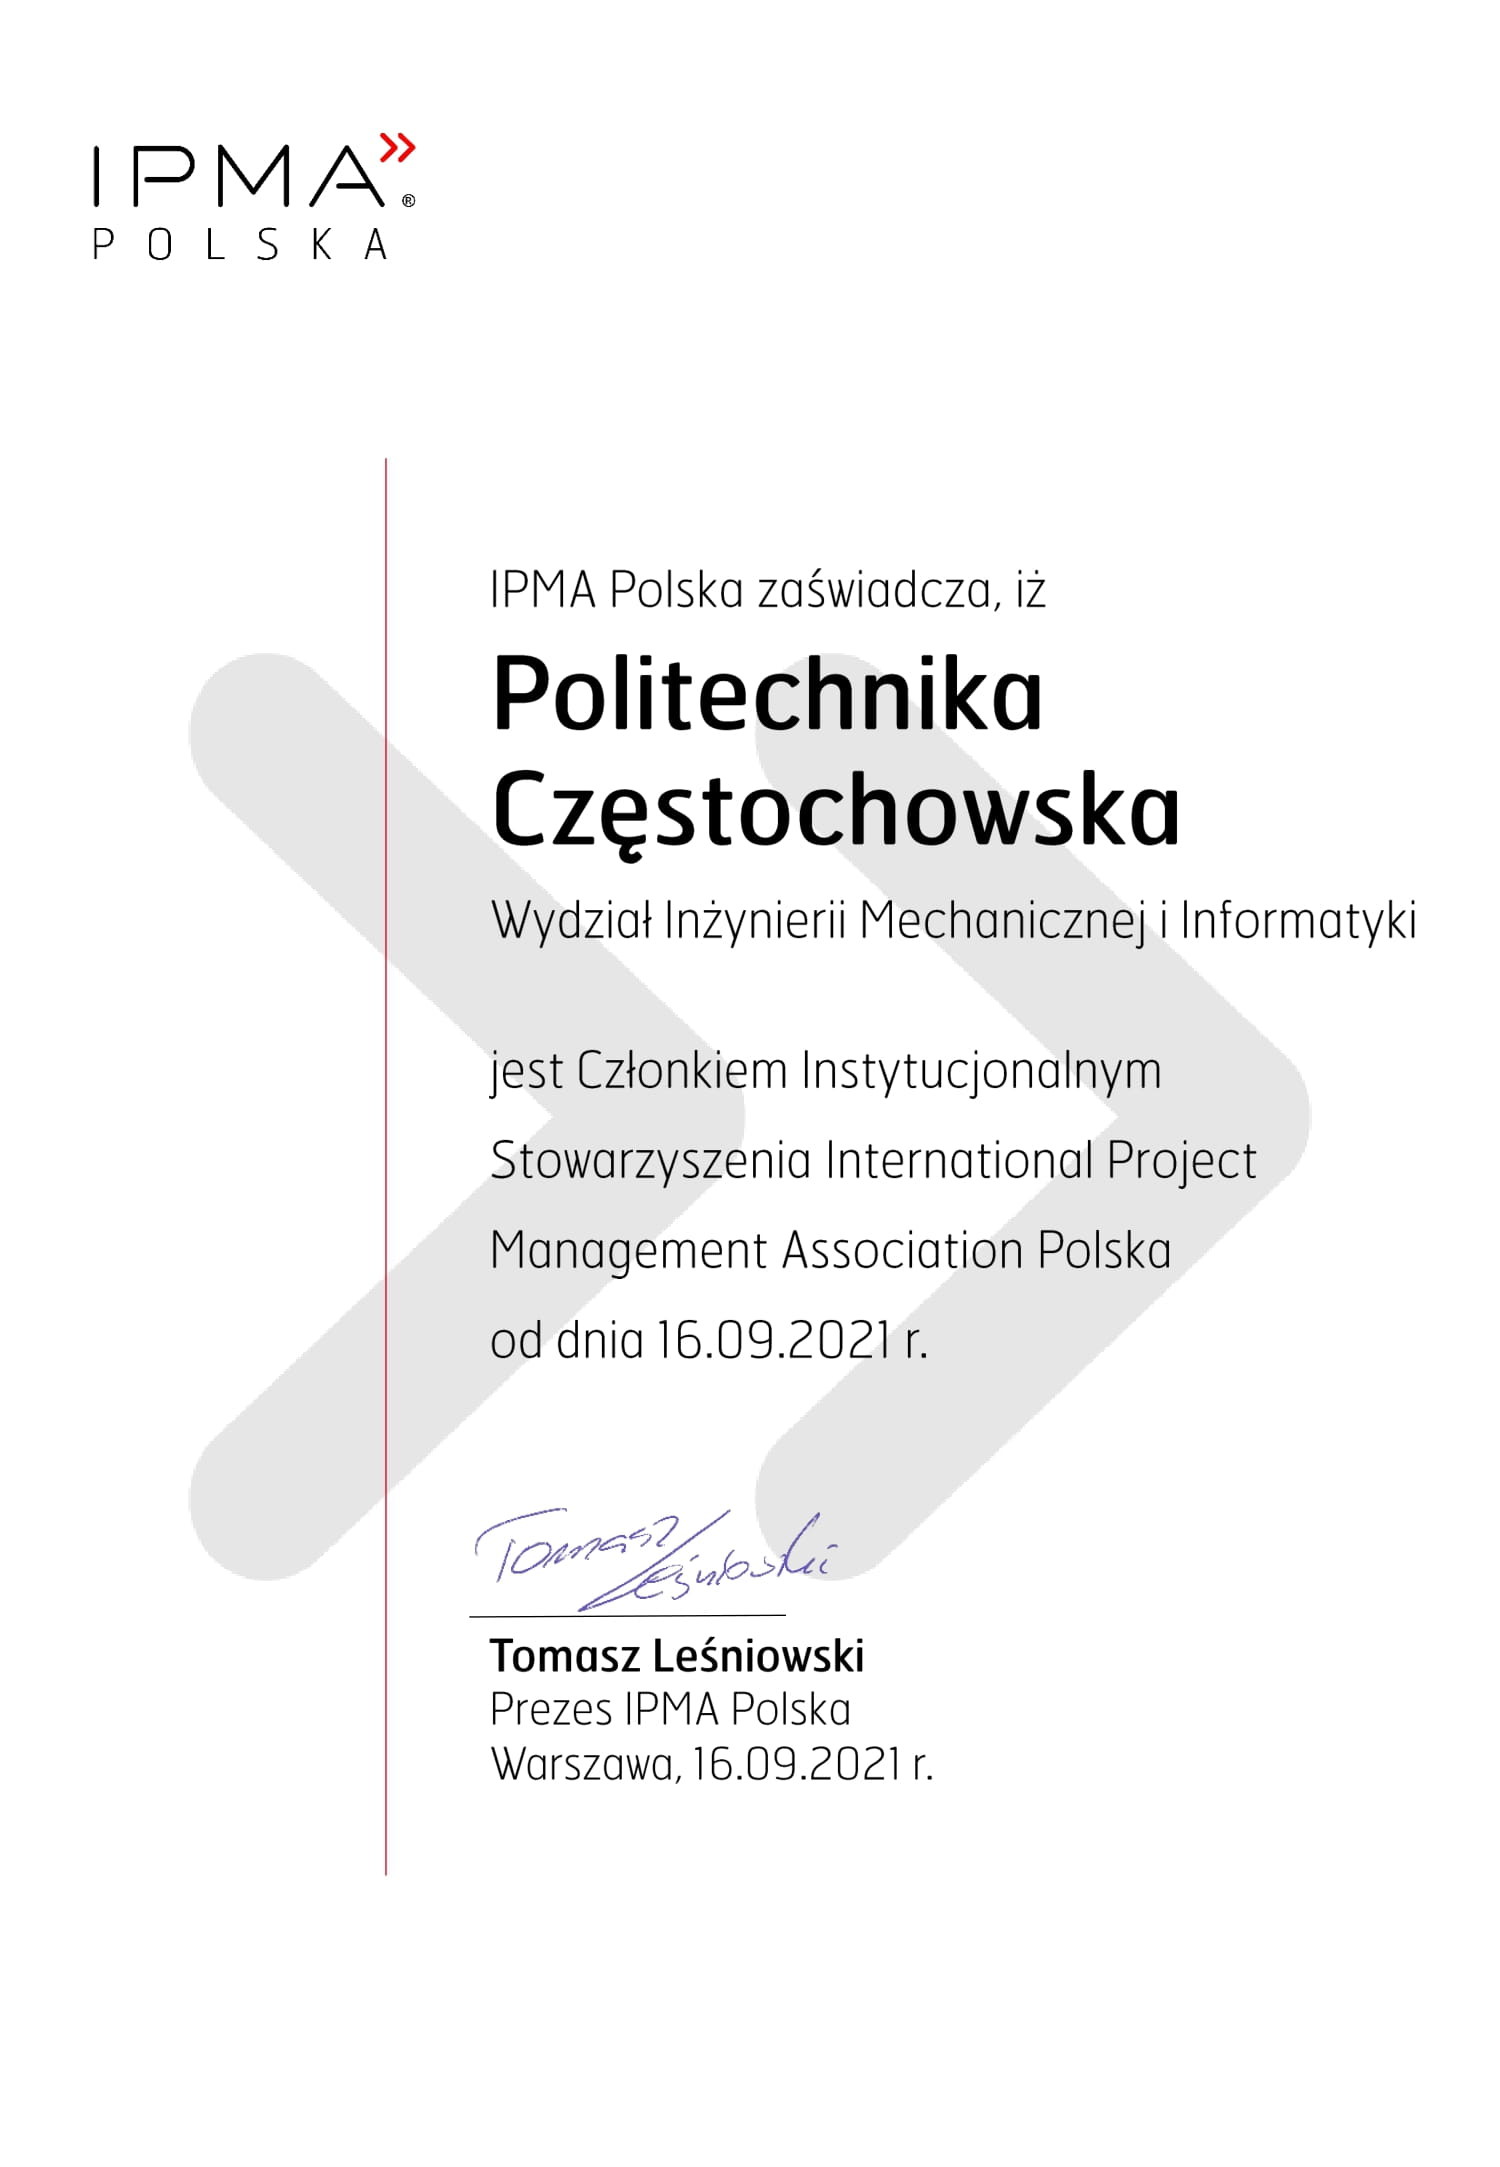 Certyfiakt potwierdzający, że Wydział Inżynierii Mechanicznej i Informatyki Politechniki Częstochowskiej jest Członkiem Instytucjonalnym Stowarzyszenia International Project Management Association Polska od dnia 16.09.2021r.